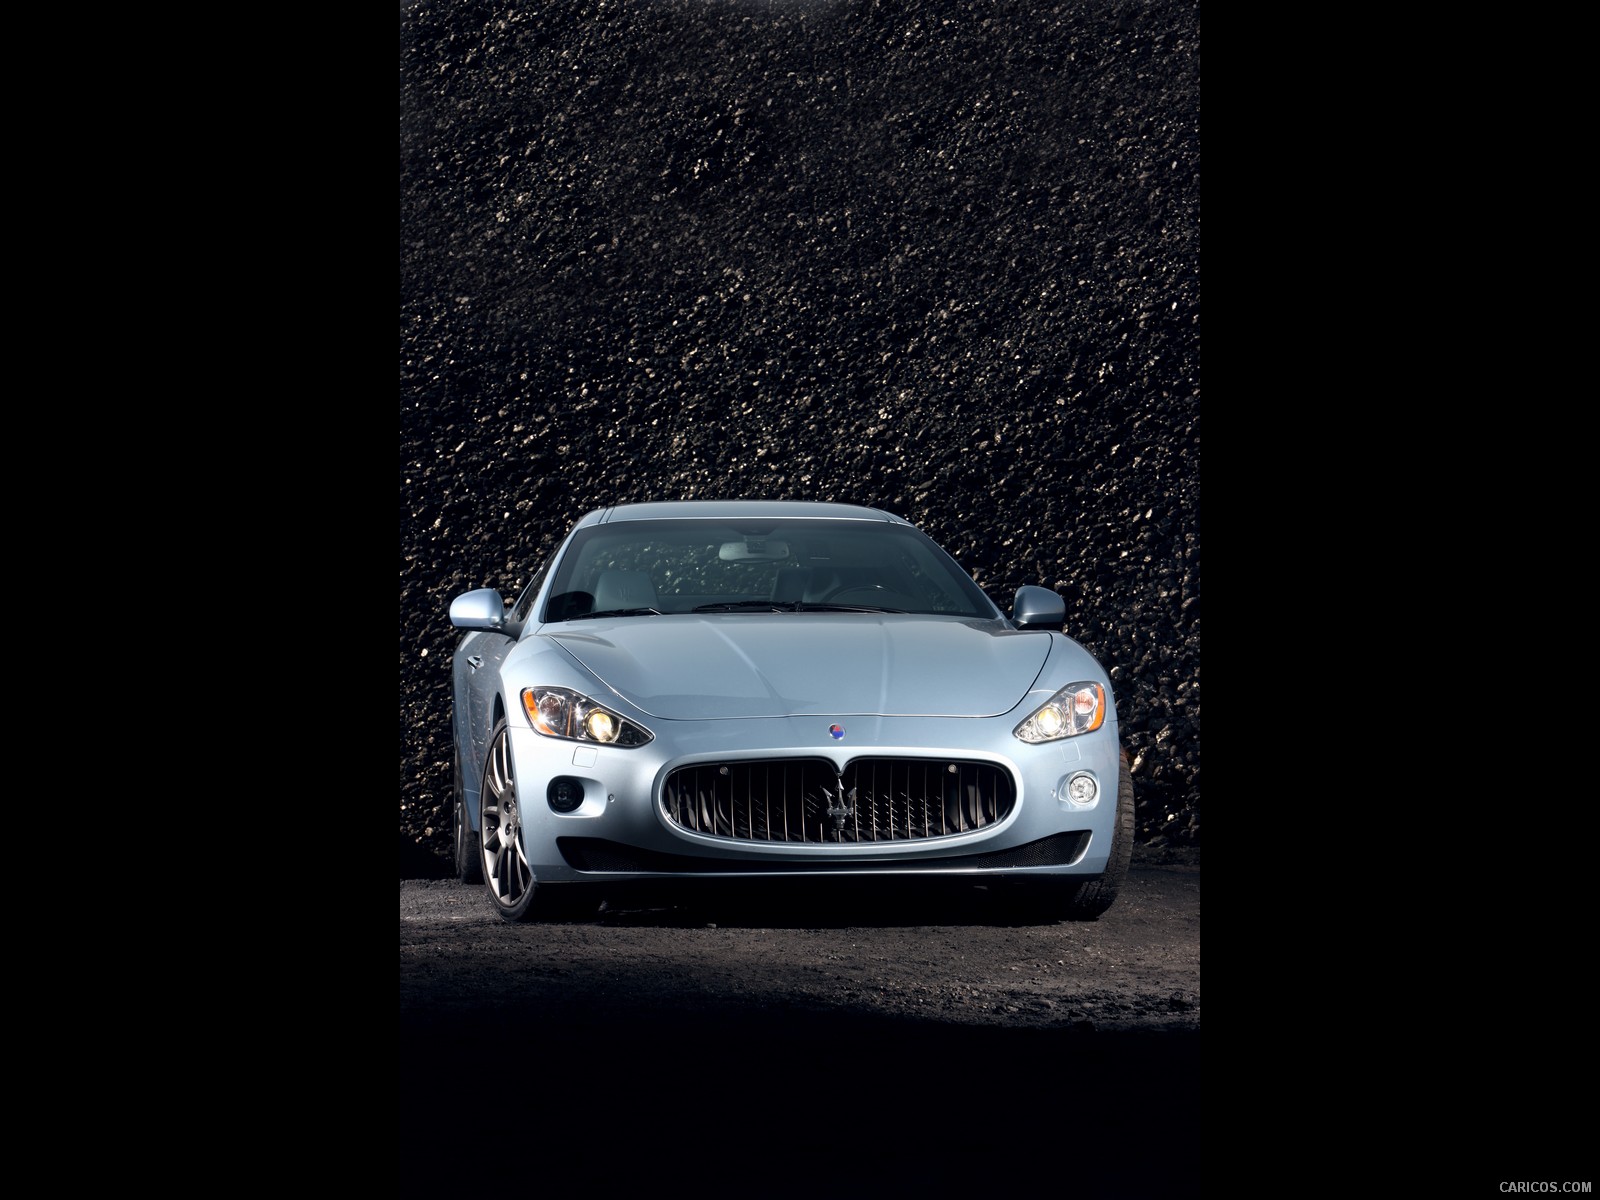 Maserati GranTurismo S Automatic (2010)  - Front Angle , #5 of 58